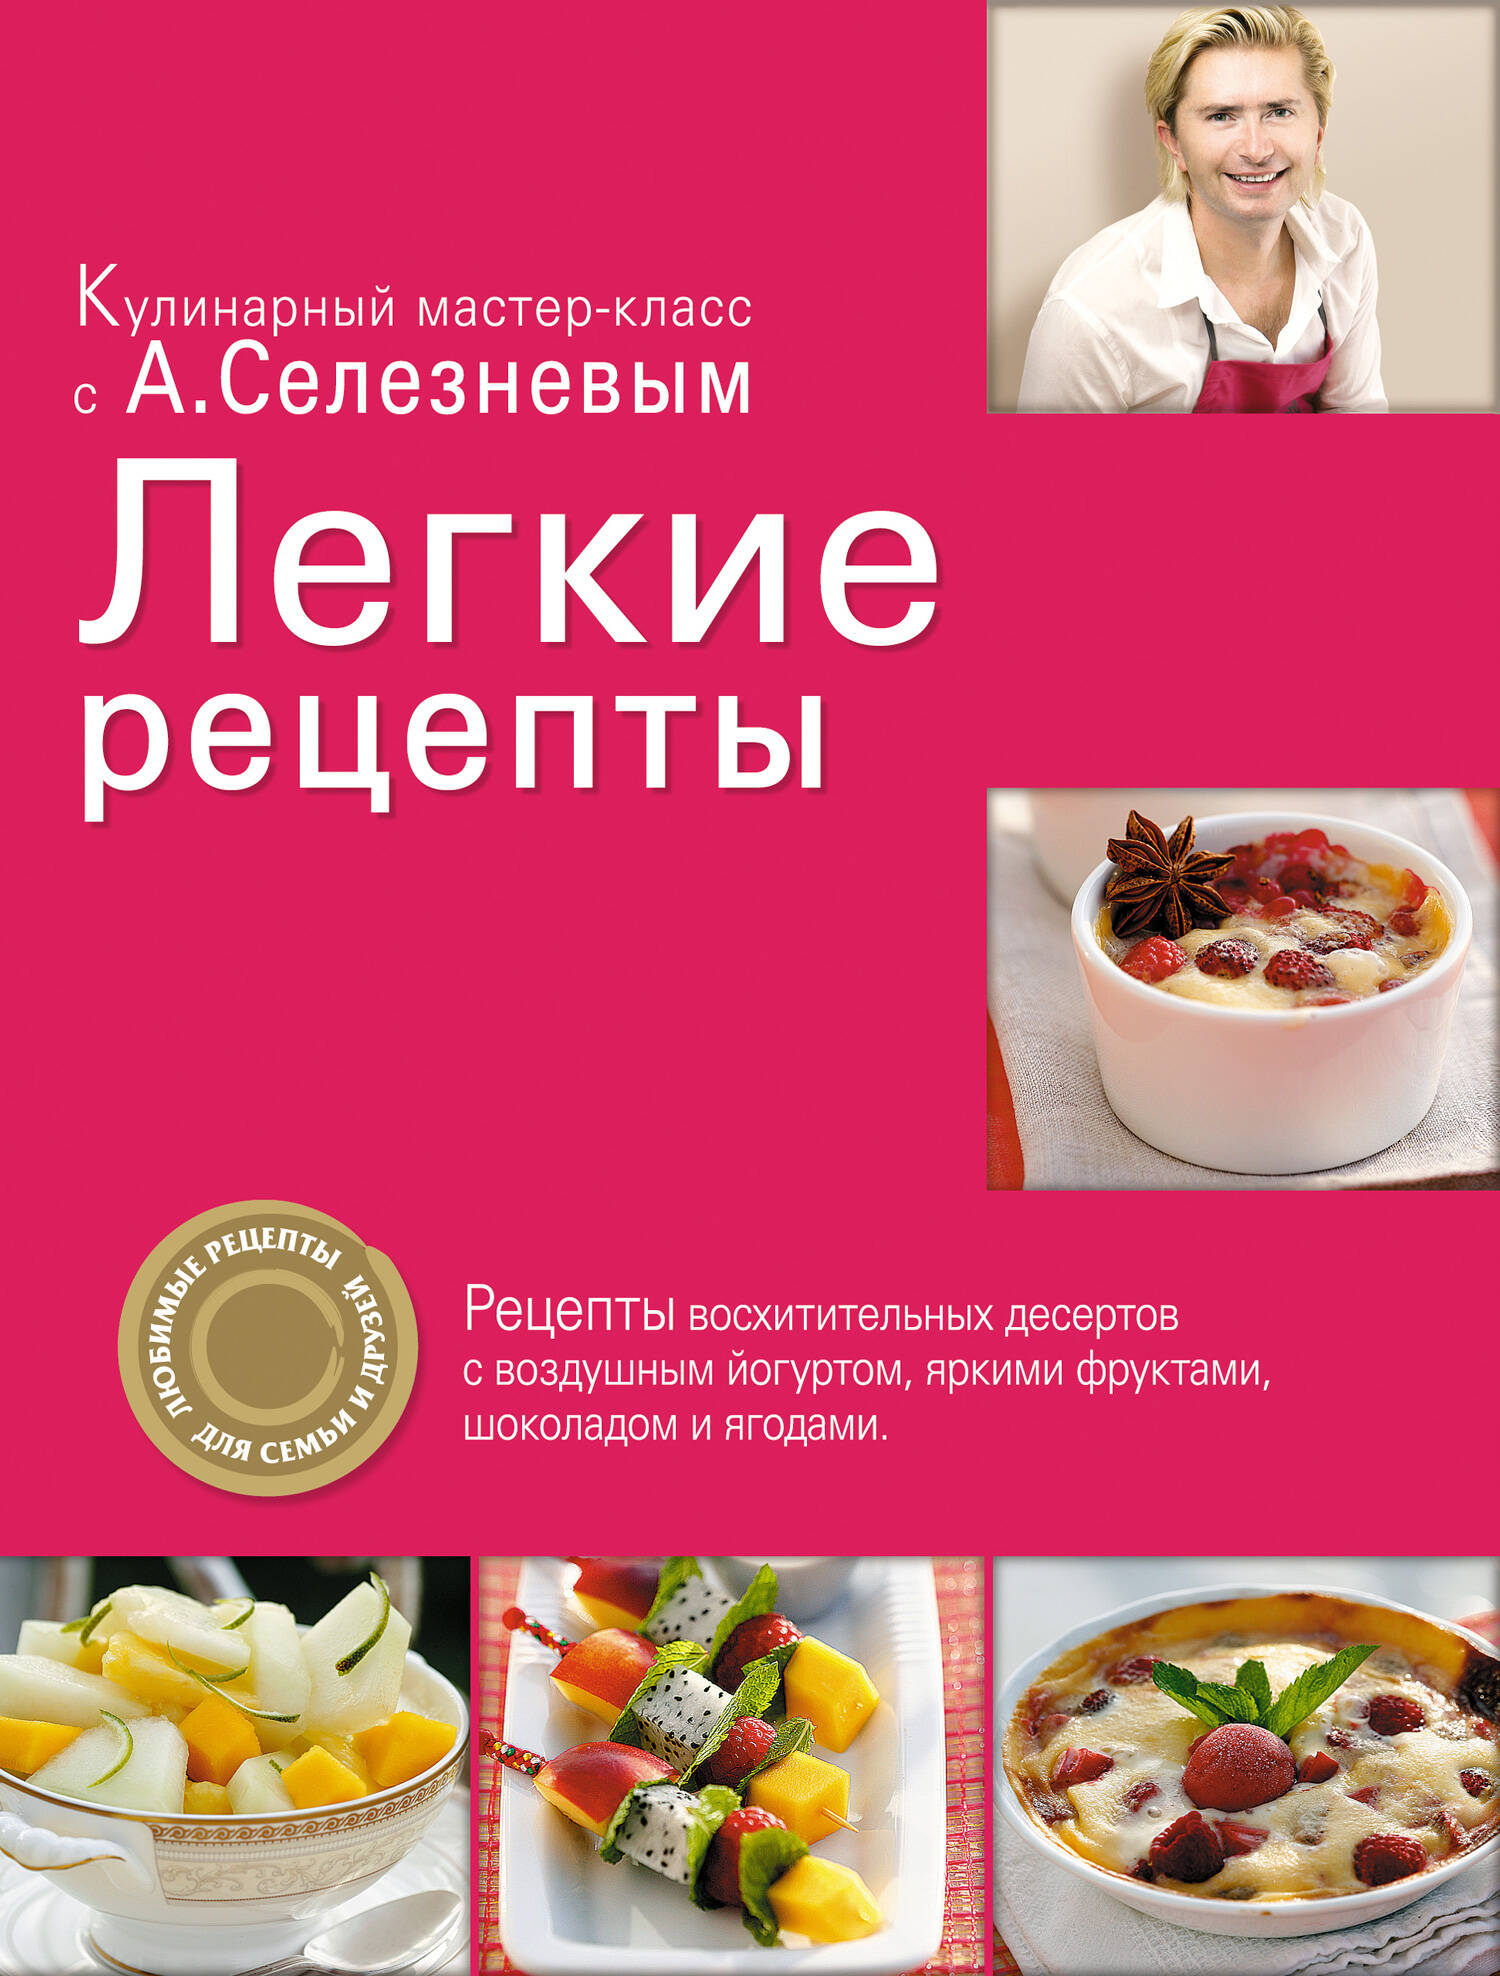 Рецепты от Александра Селезнева — кулинар не я